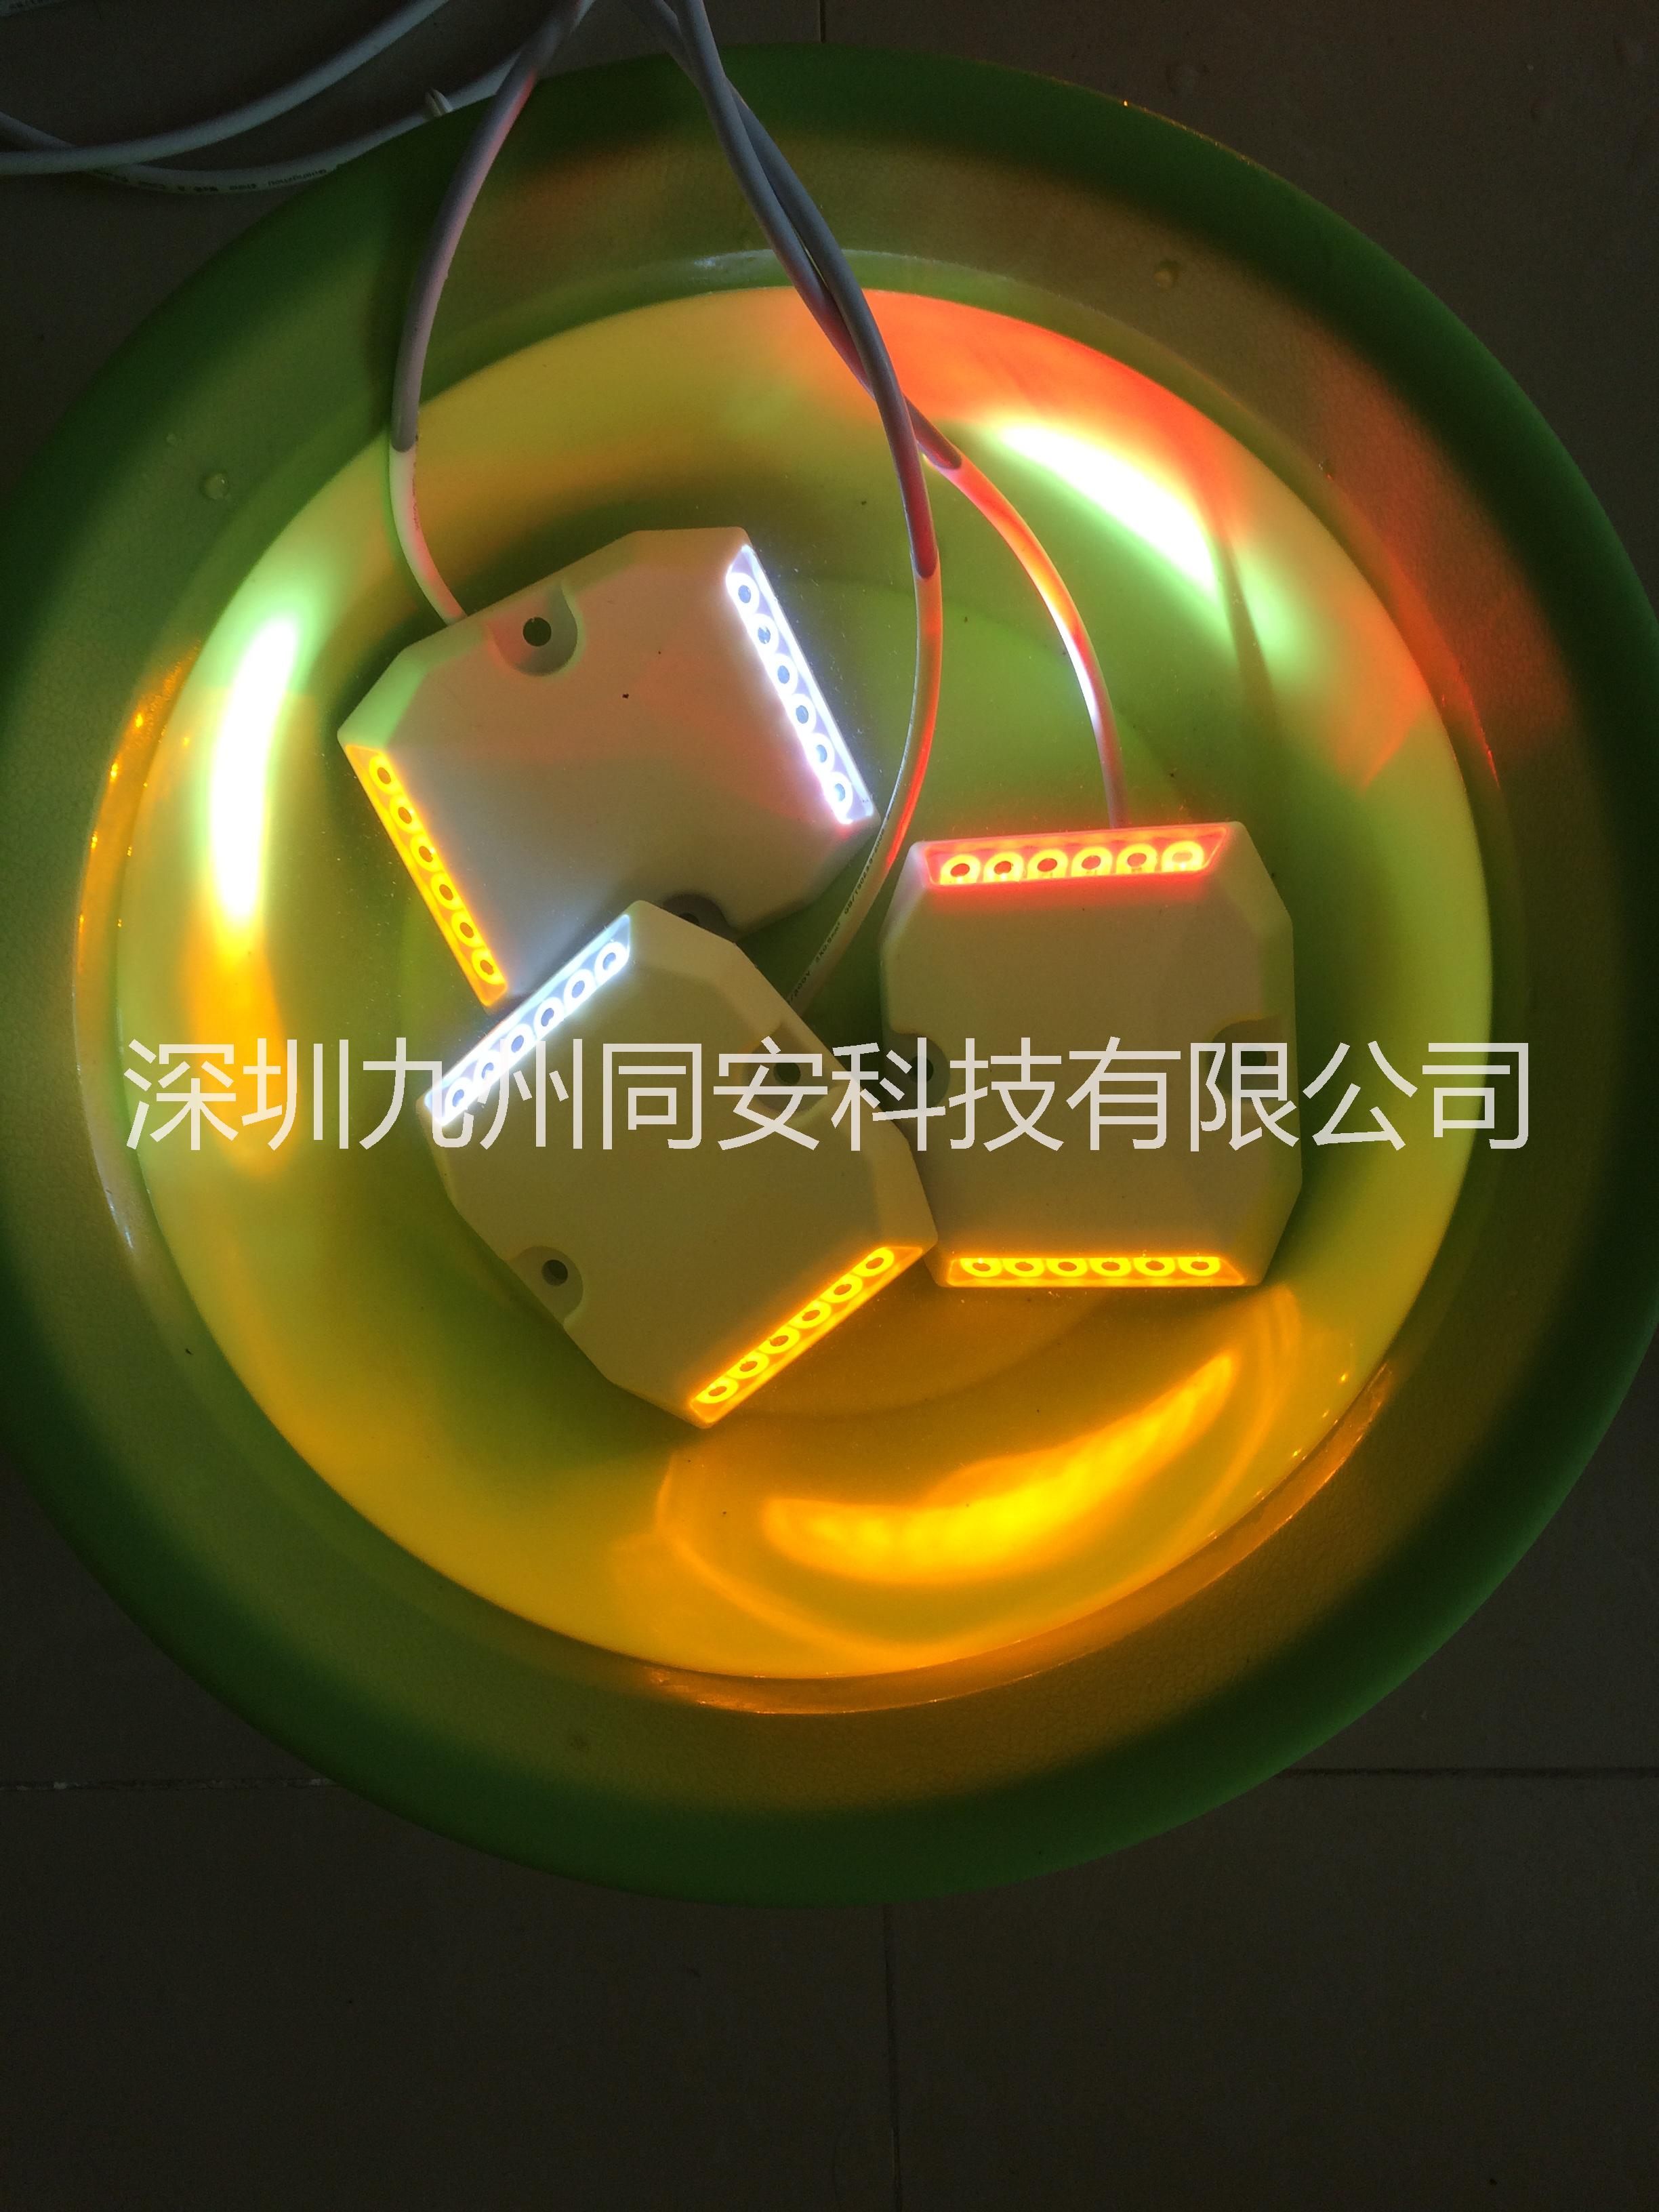 供应隧道诱导标，LED诱导标价格，隧道诱导灯厂家，深圳九州同安